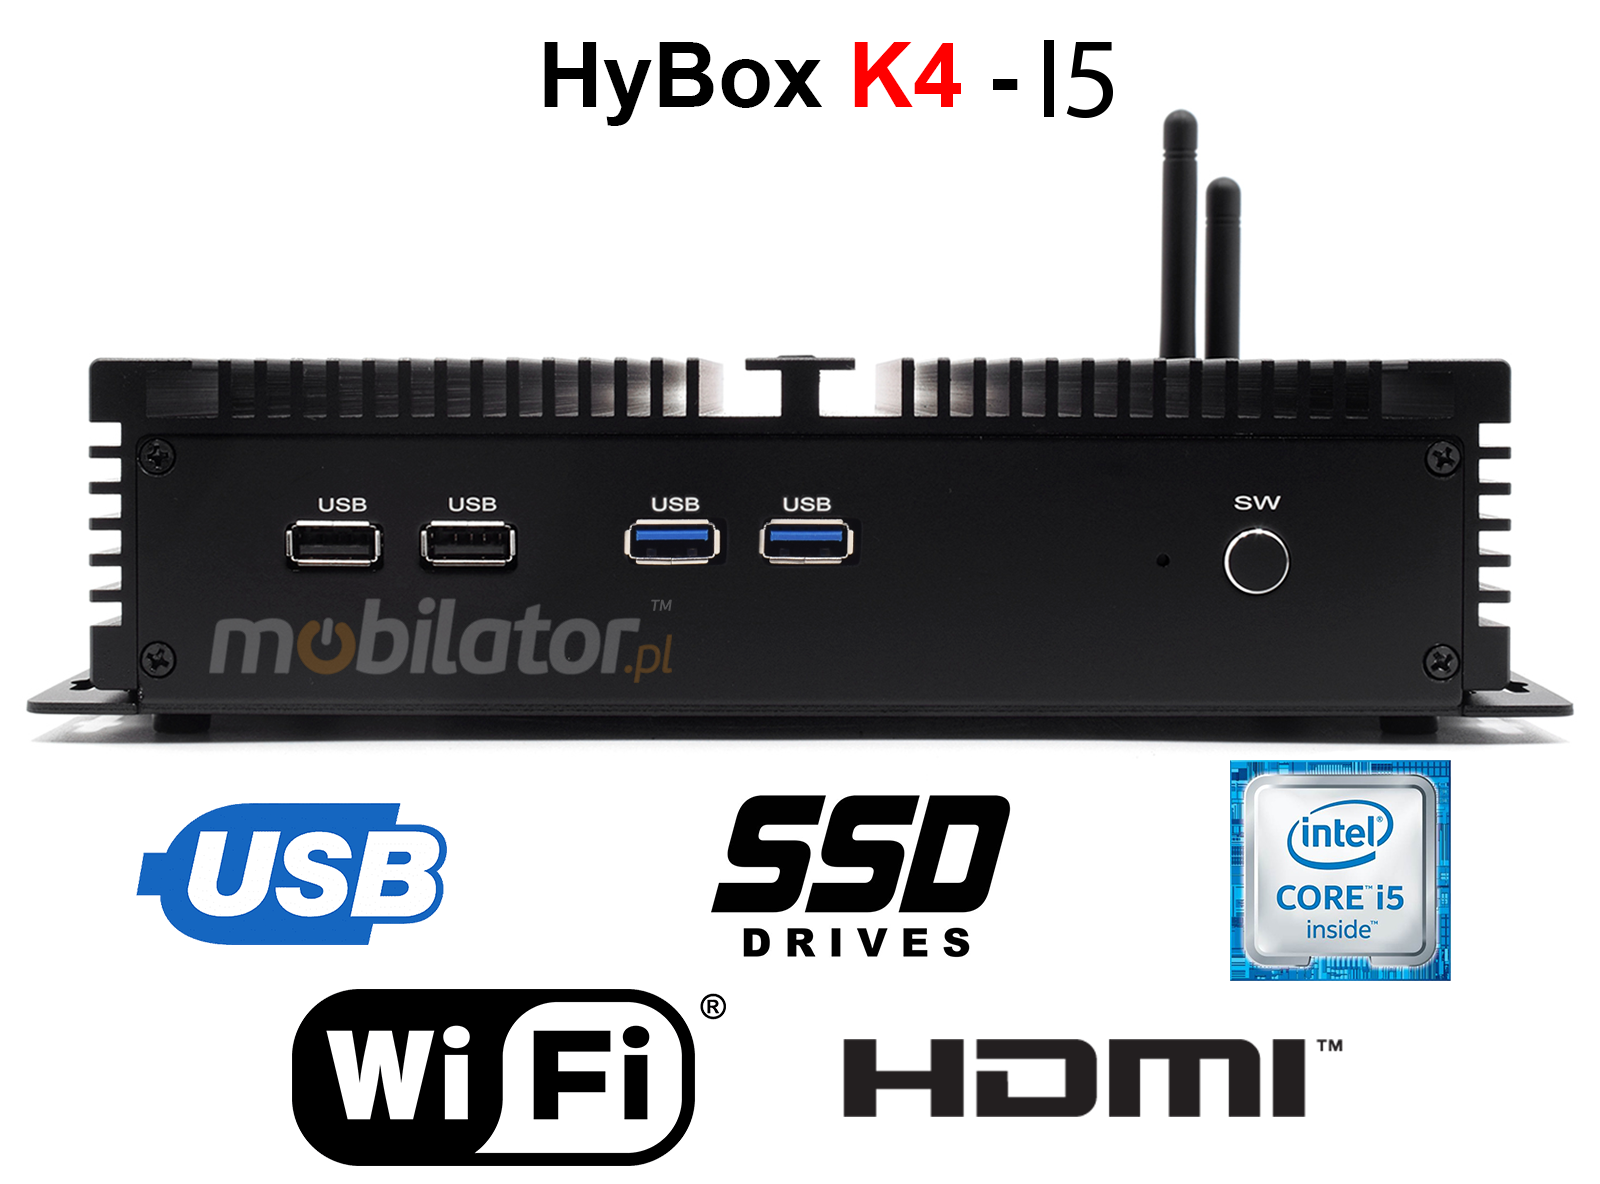 HyBOX K4 may niezawodny szybki i wydajny mini pc w metalowej obudowie przystosowany do pracy na biurze